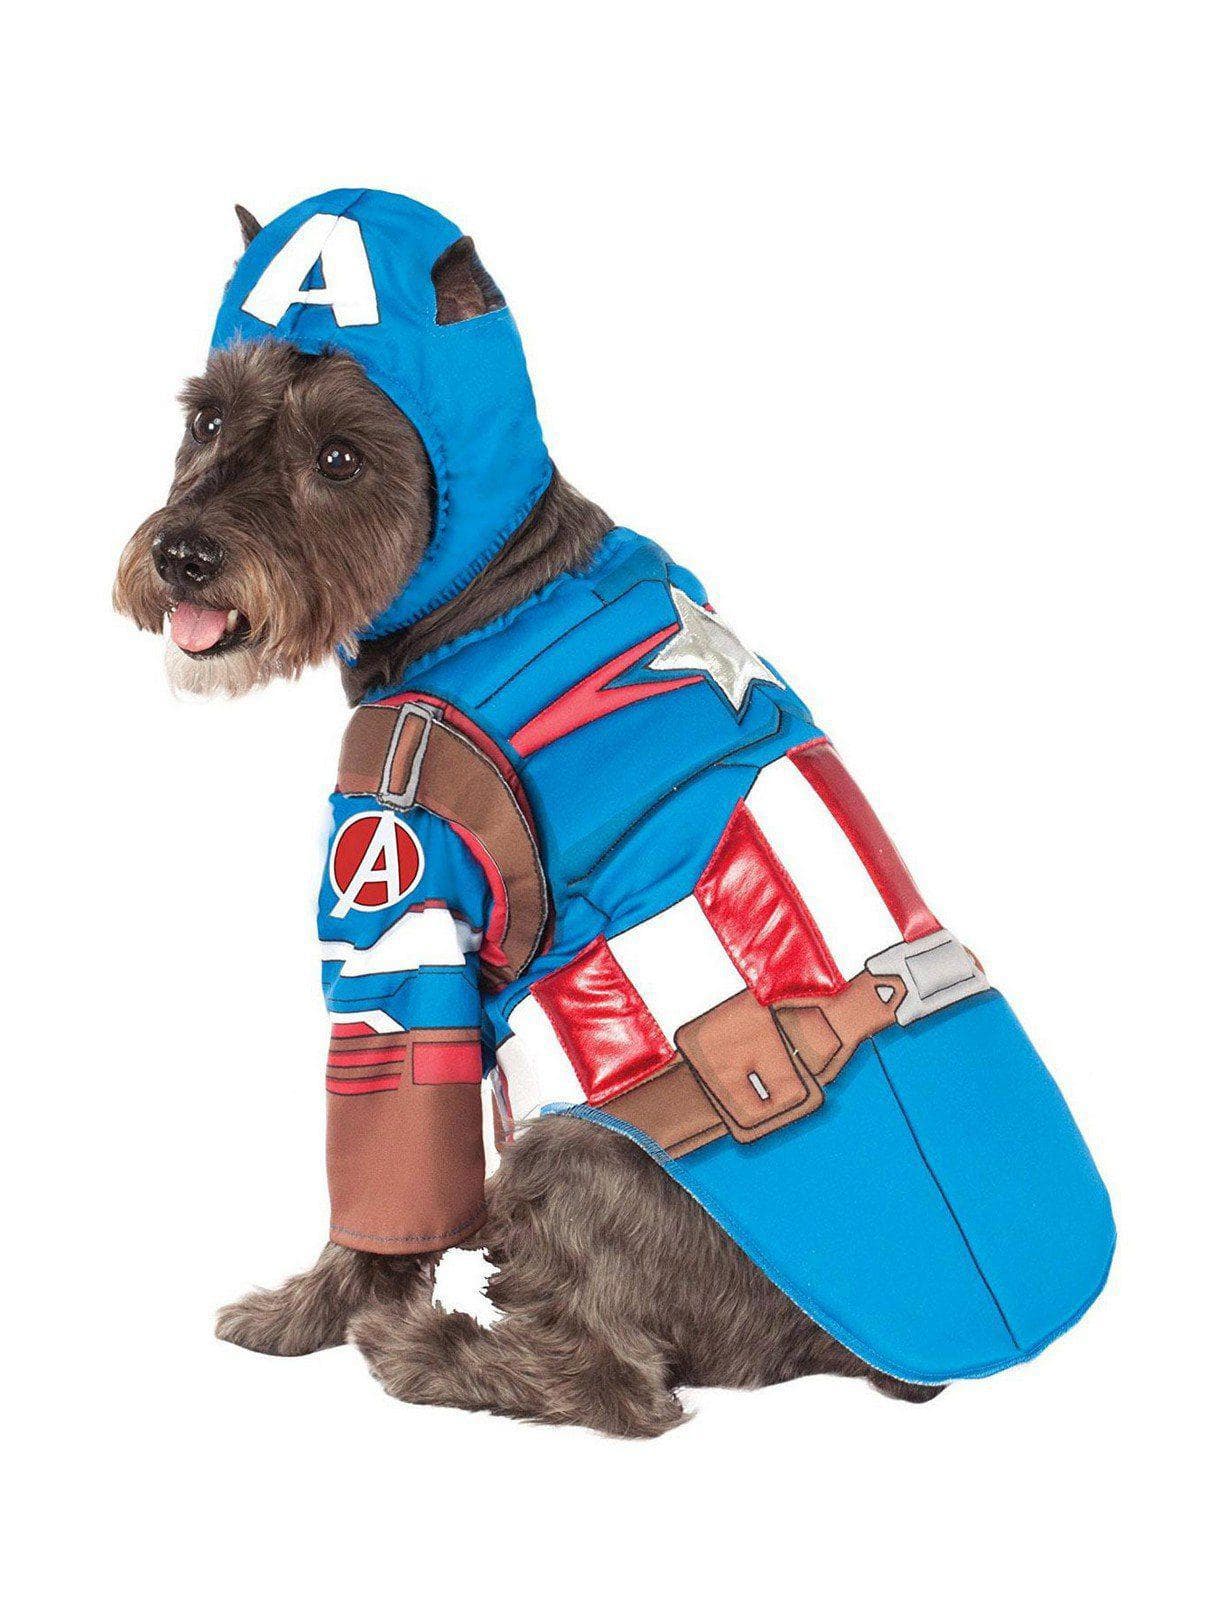 Avengers Captain America Pet Costume - costumes.com